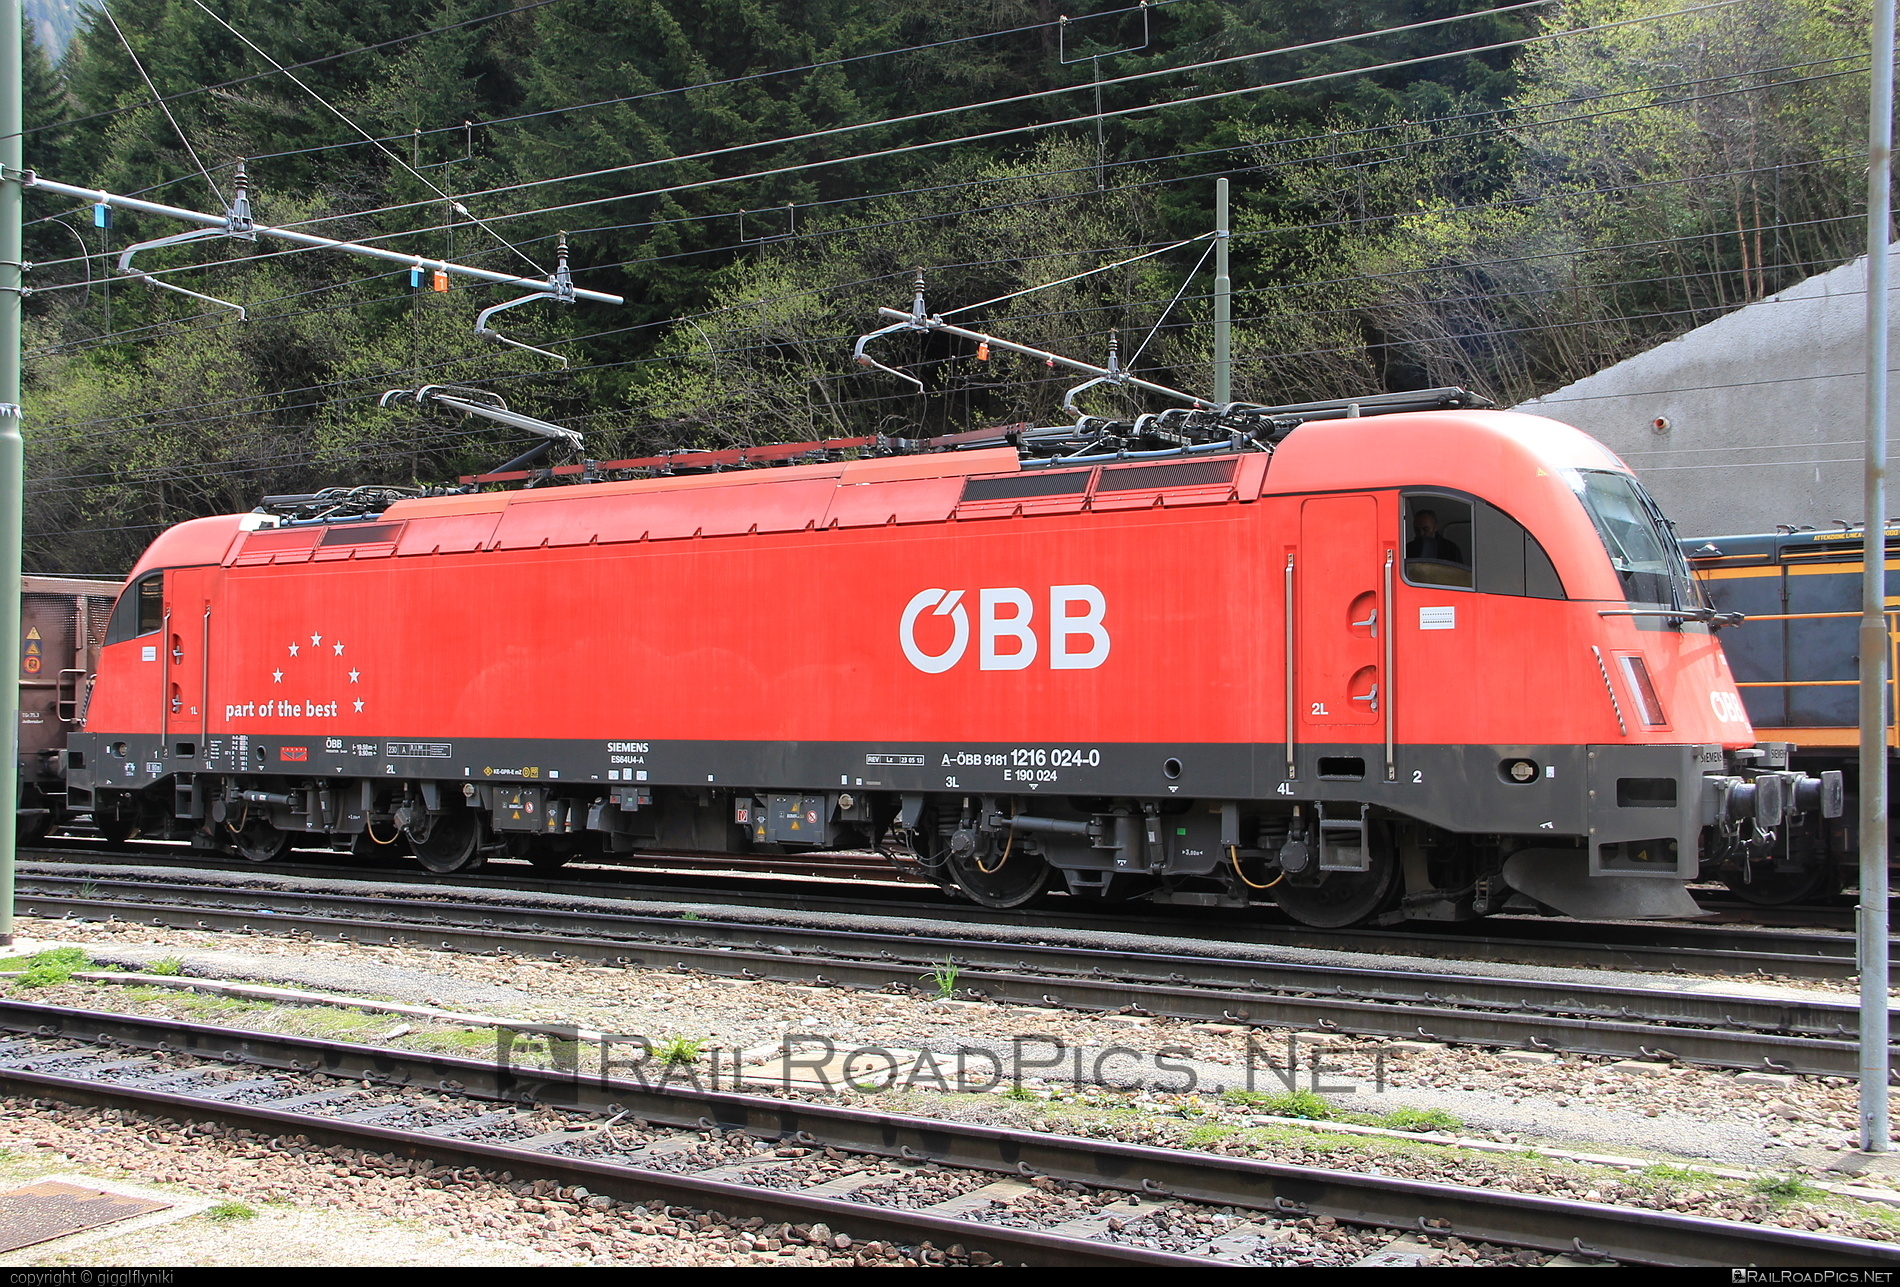 Siemens ES 64 U4 - 1216 024 operated by Rail Cargo Austria AG #es64 #es64u4 #eurosprinter #obb #osterreichischebundesbahnen #rcw #siemens #siemensEs64 #siemensEs64u4 #siemenstaurus #taurus #tauruslocomotive